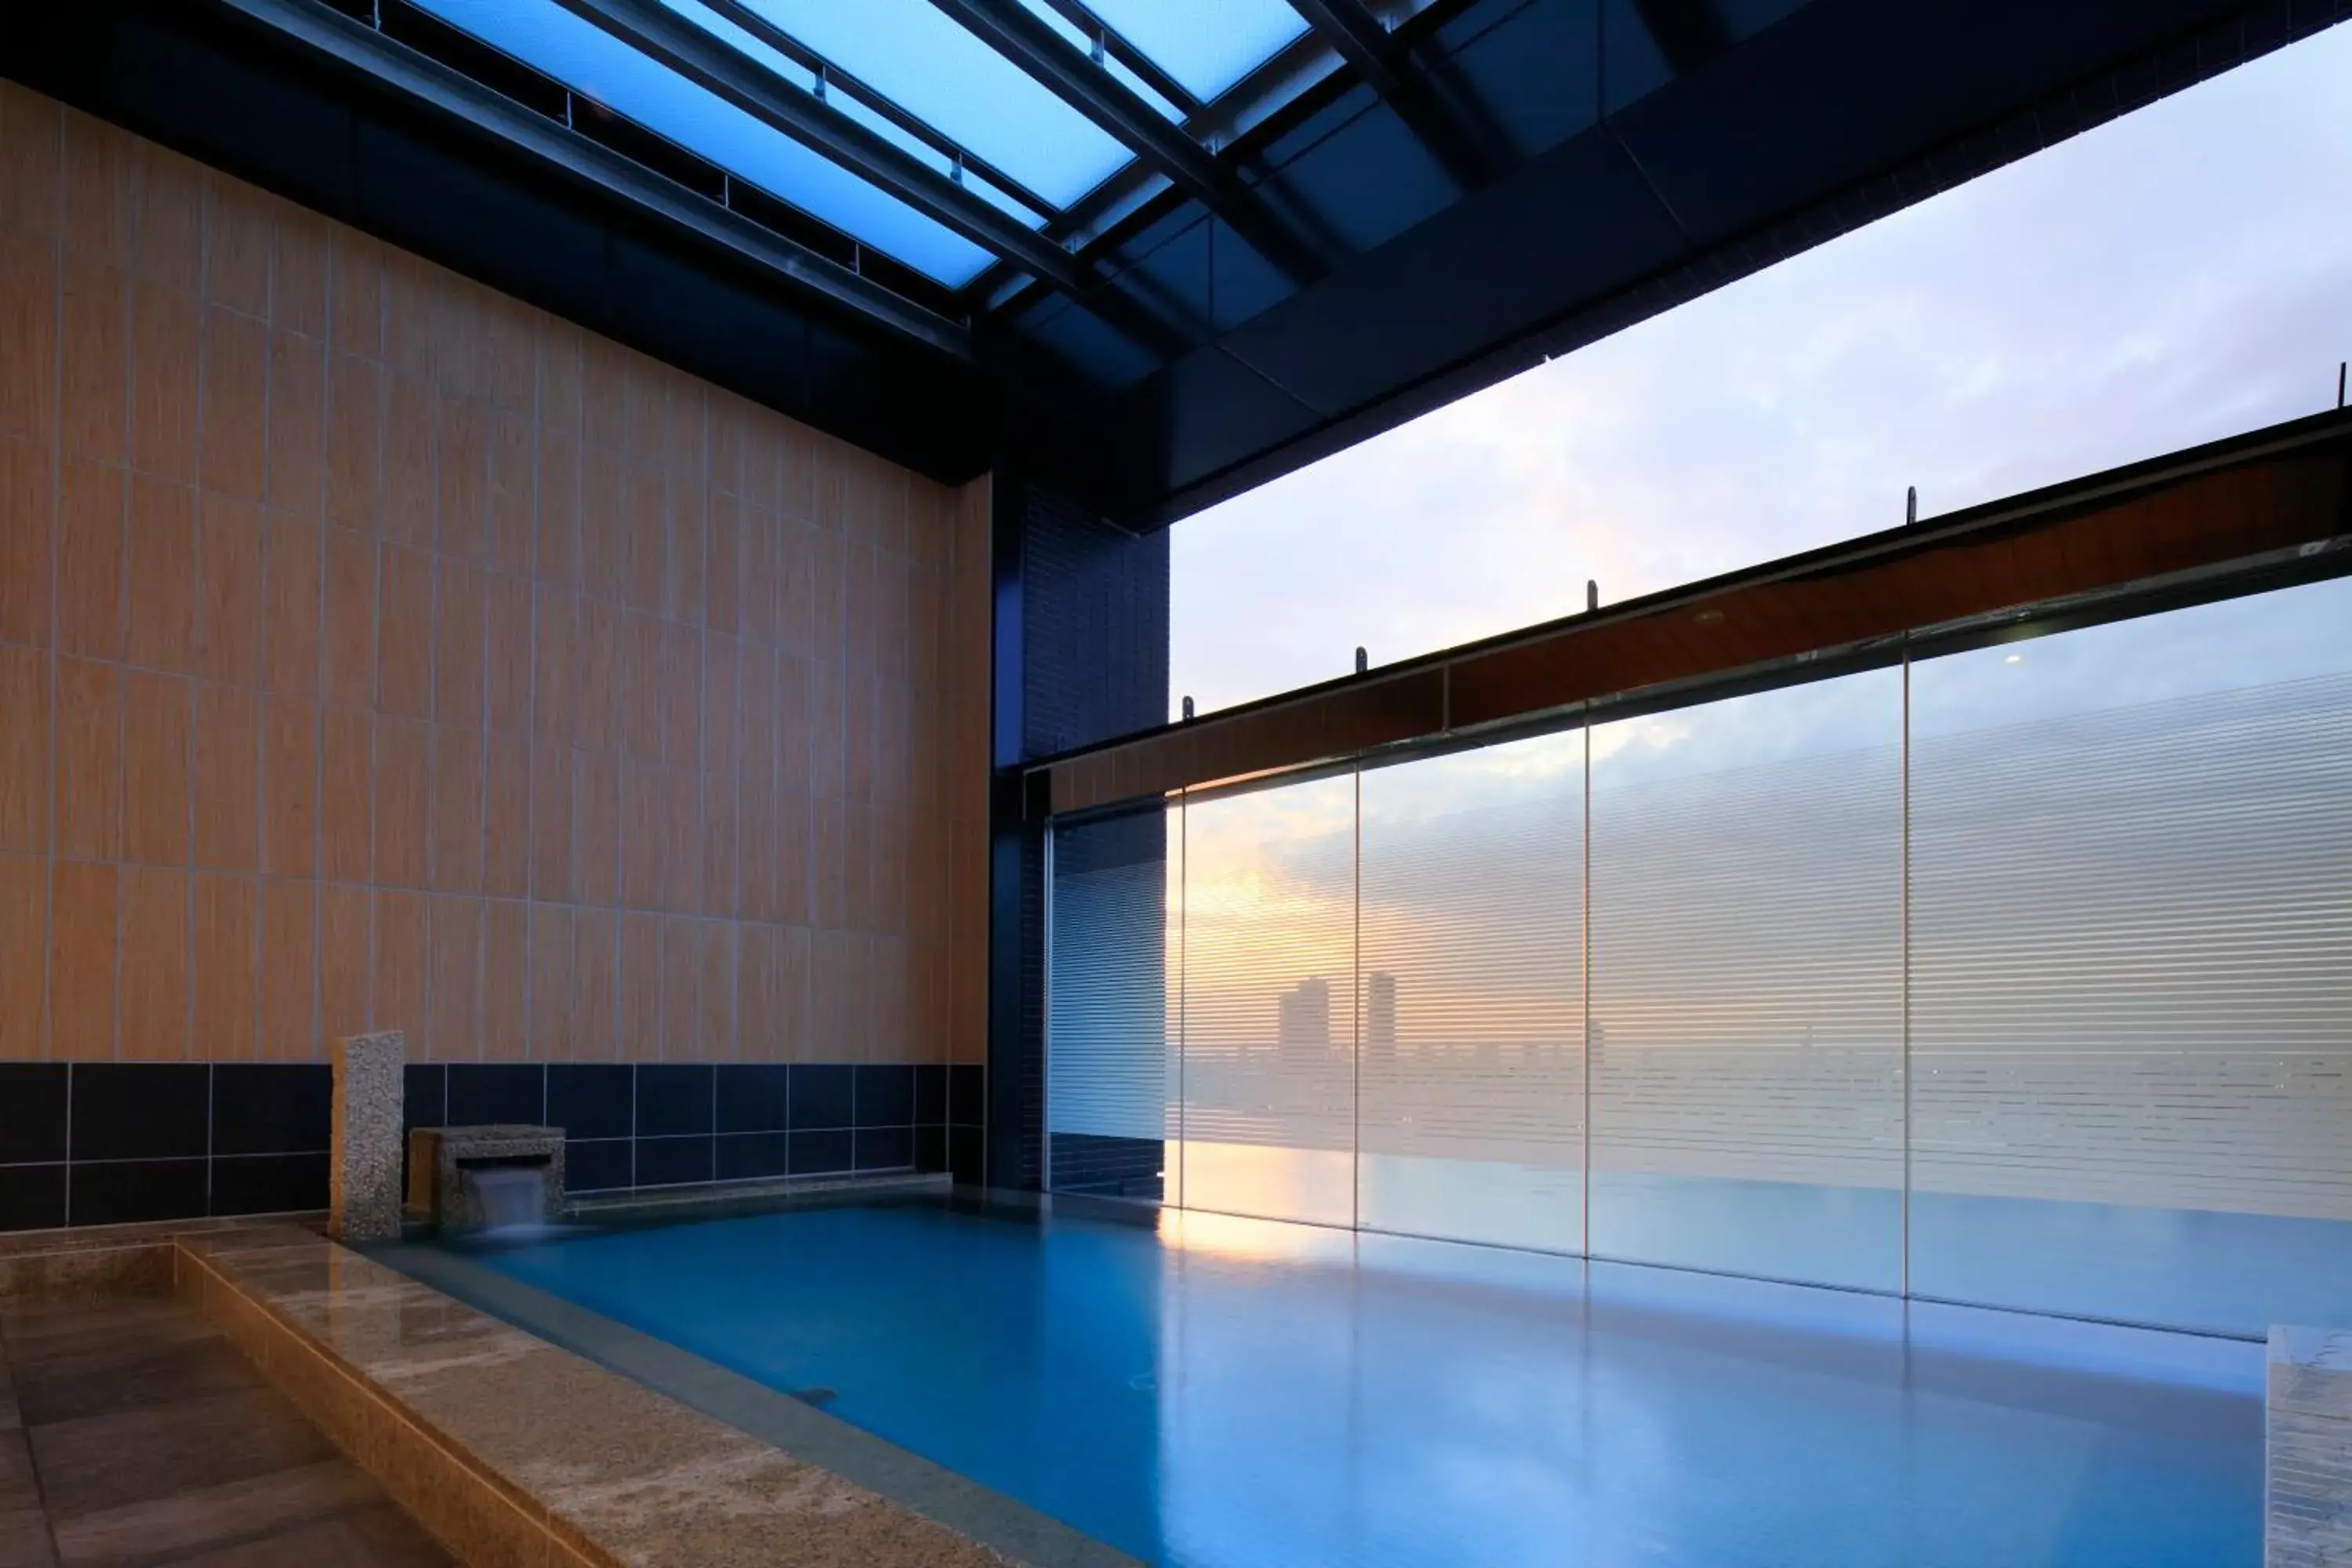 Open Air Bath, Swimming Pool in The Singulari Hotel & Skyspa at Universal Studios Japan